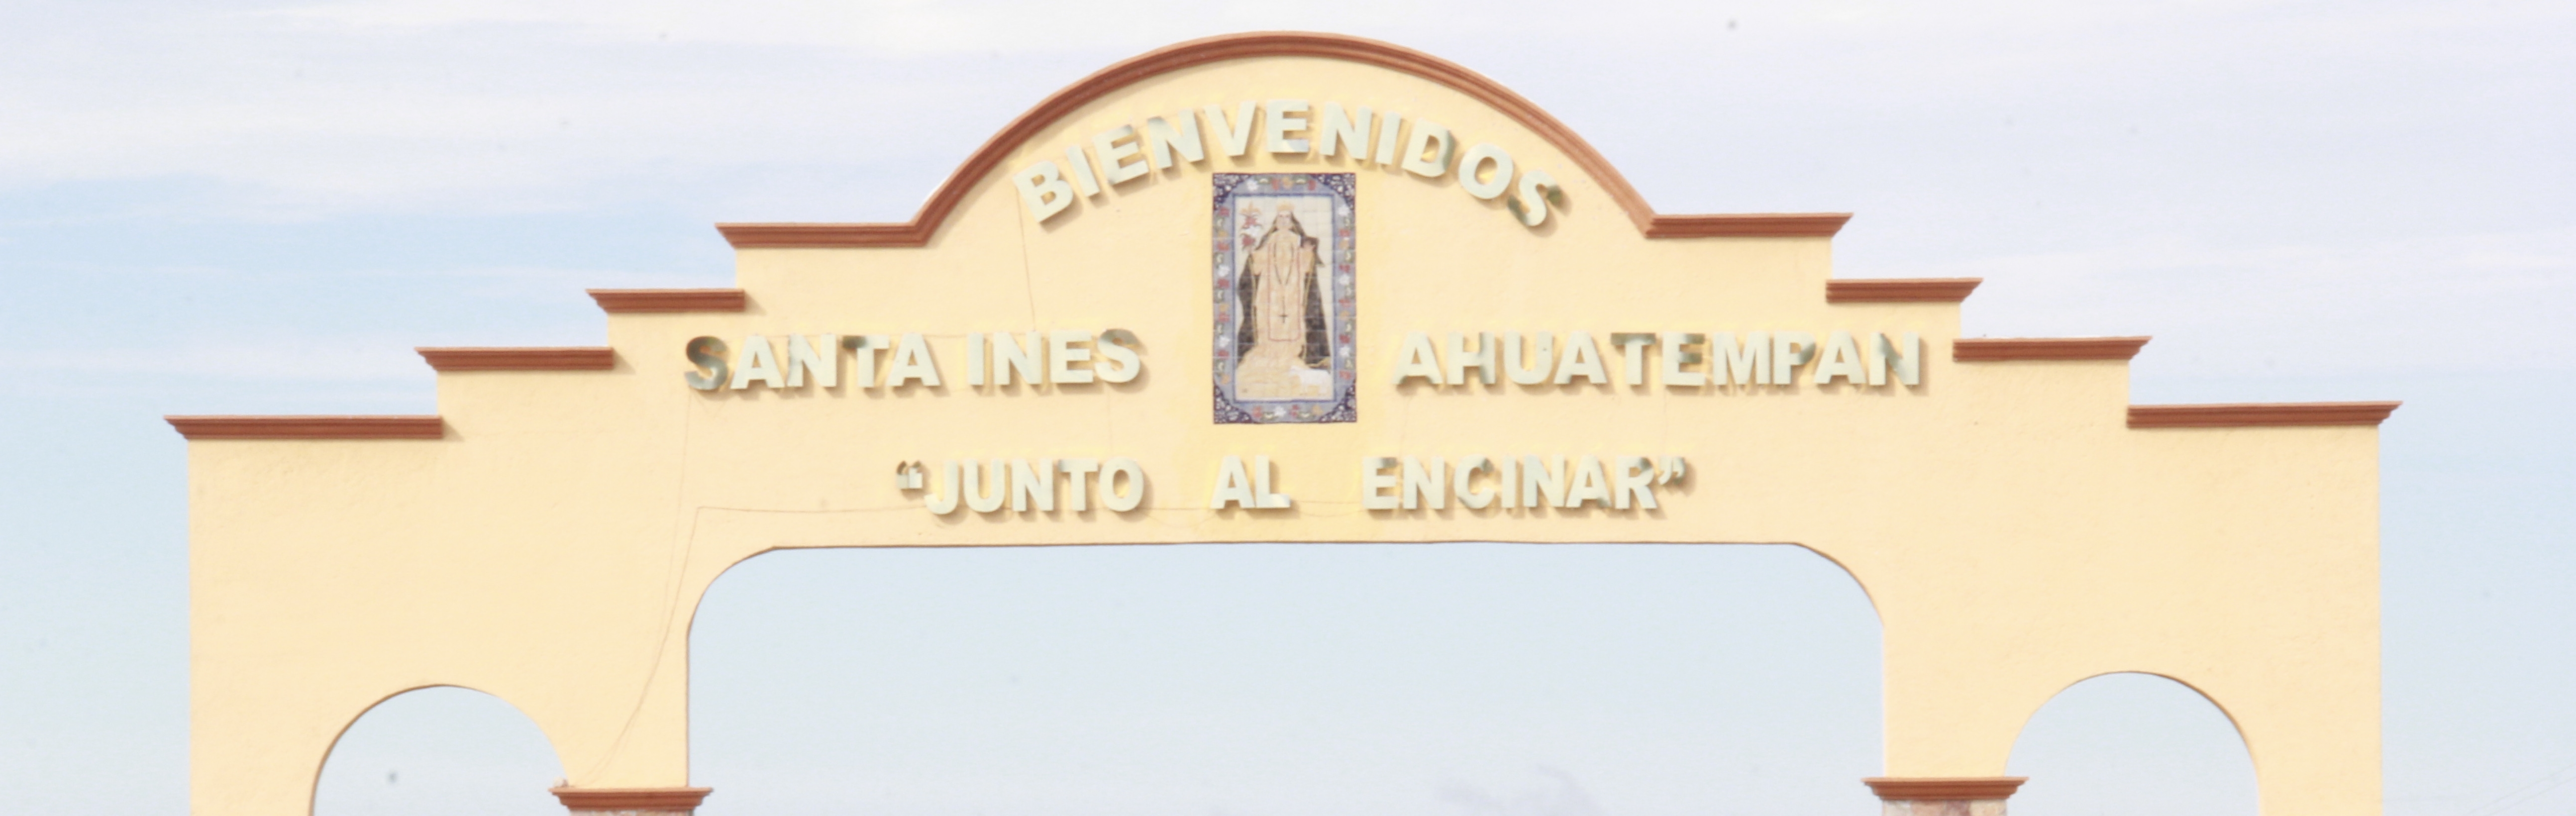 Santa Inés Ahuatempan